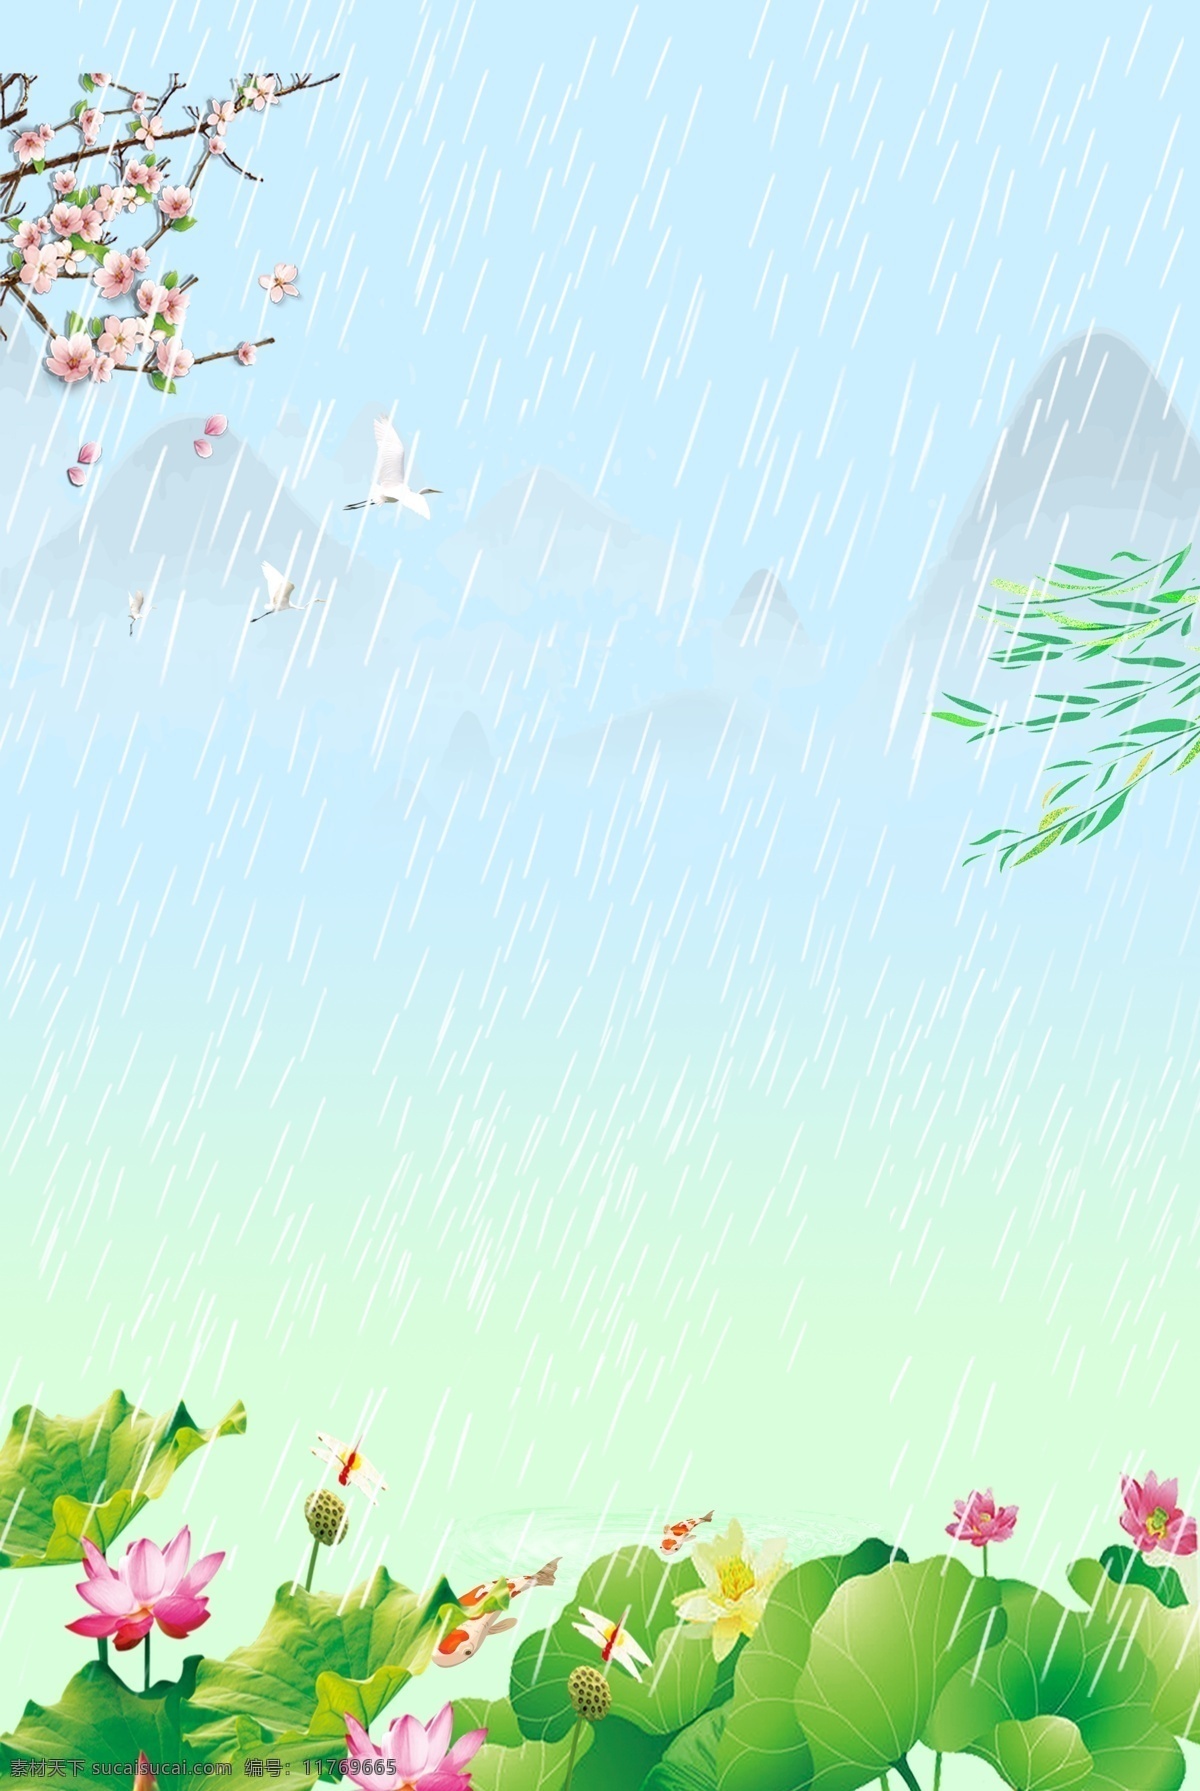 二十四节气 雨水 背景 传统节气 雨水节气 卡通风 清新 下雨 荷花 鹤 简约